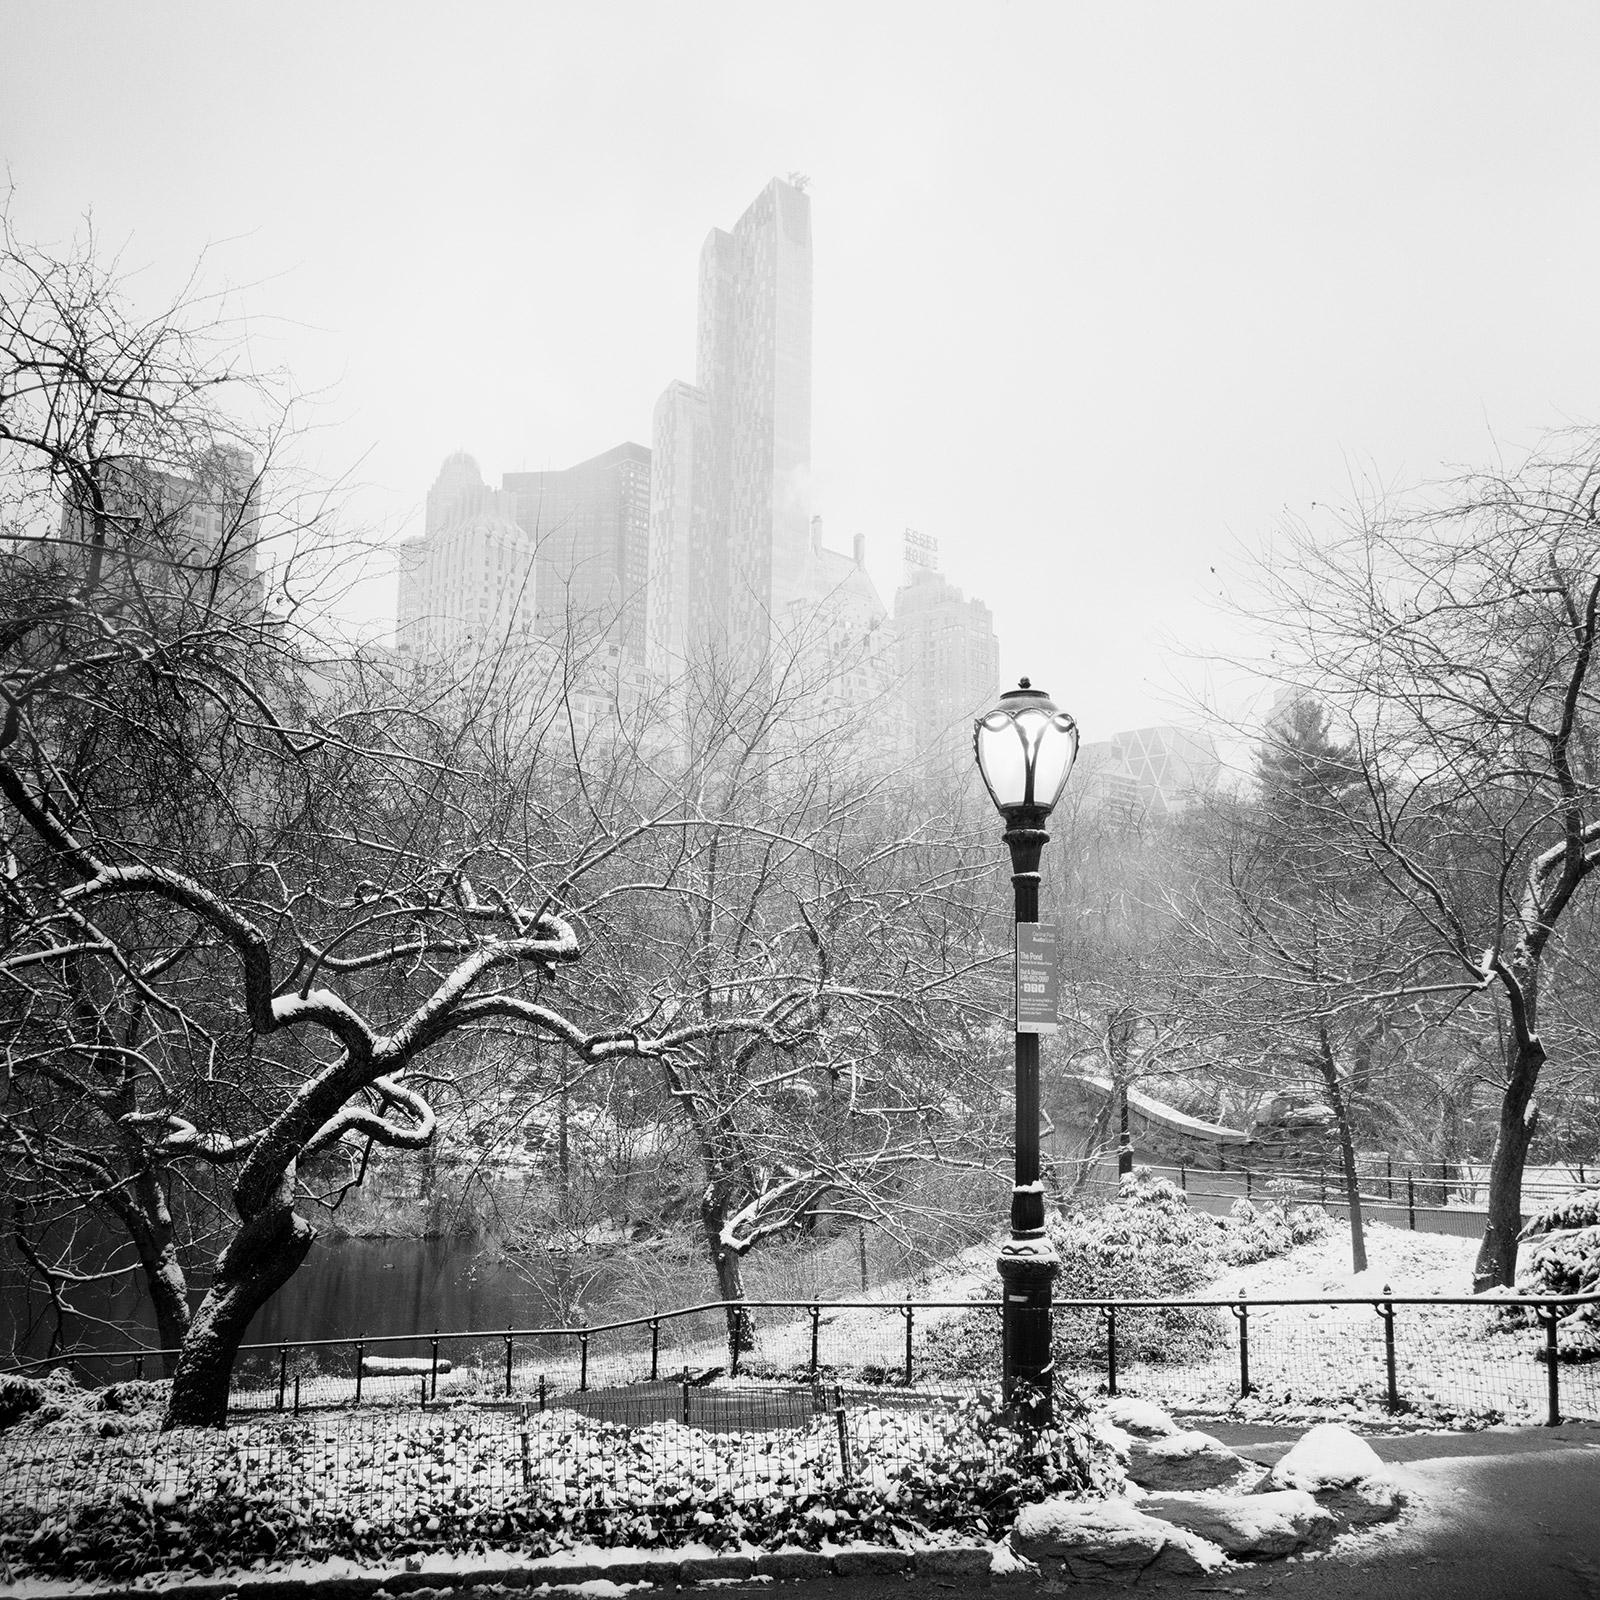 Central Park, New York, photographies en noir et blanc recouvertes de neige, paysage